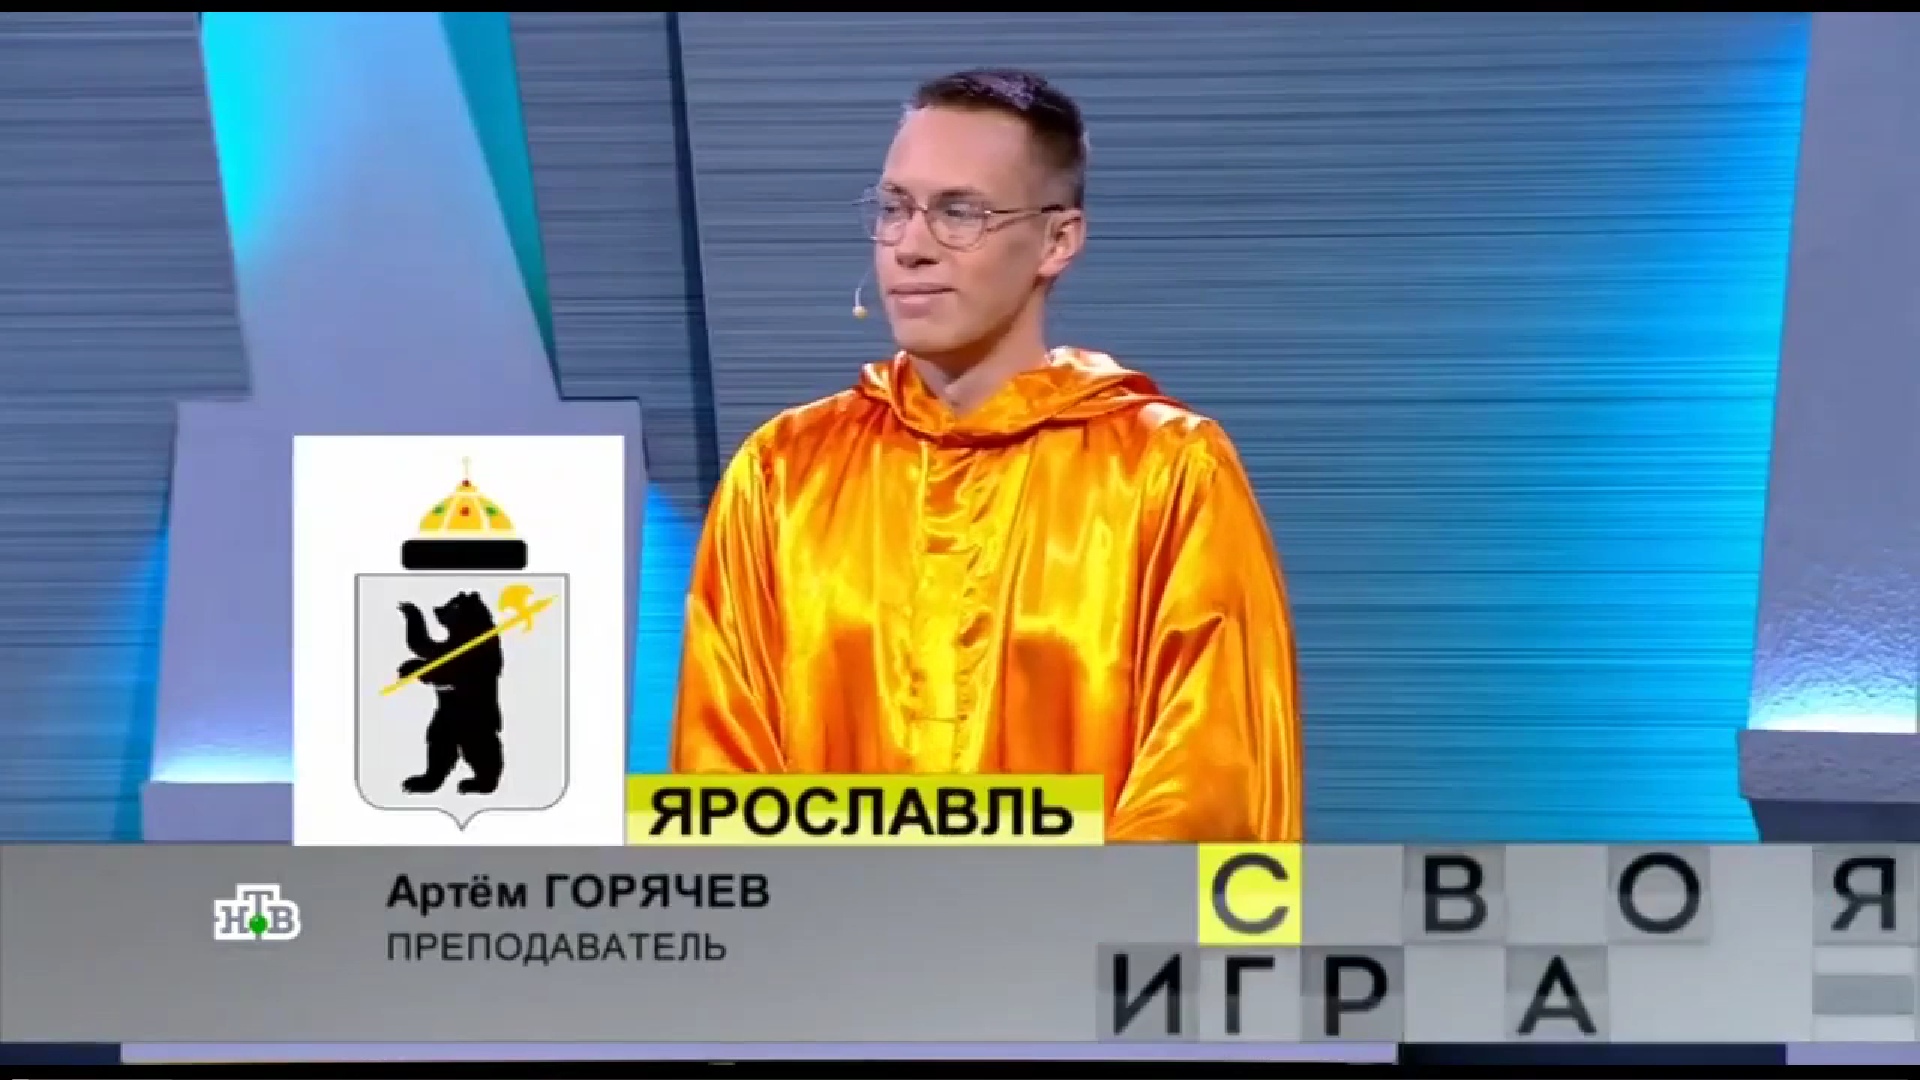 Историк из Ярославля успешно выступил в «Своей игре» на федеральном канале